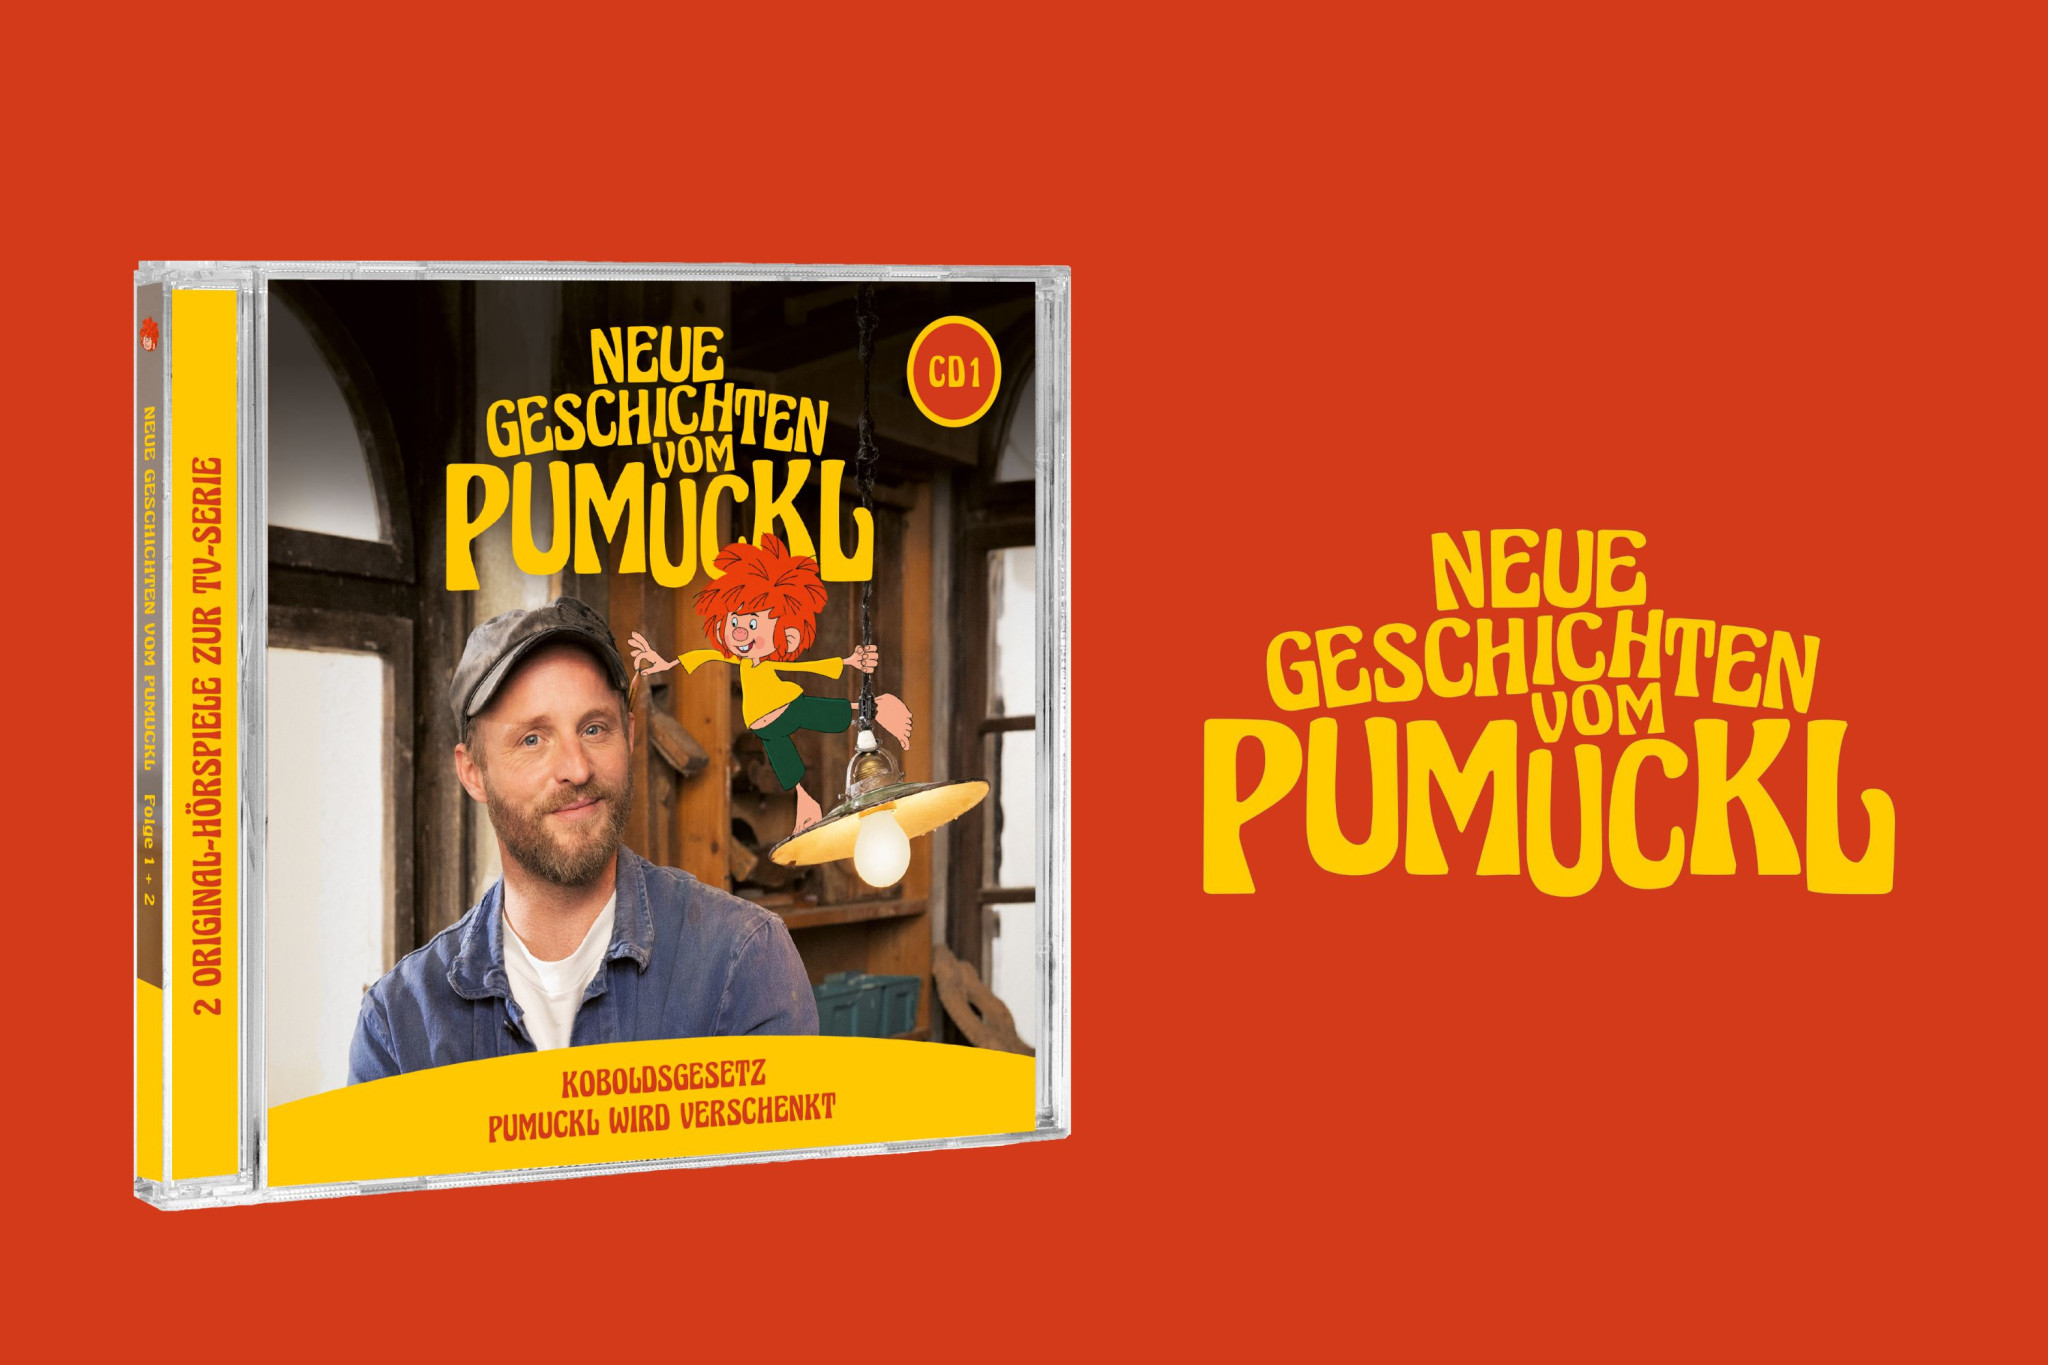 Die neuen Geschichten vom Pumuckl: Folge 1 & 2 jetzt auch auf CD erhältlich!